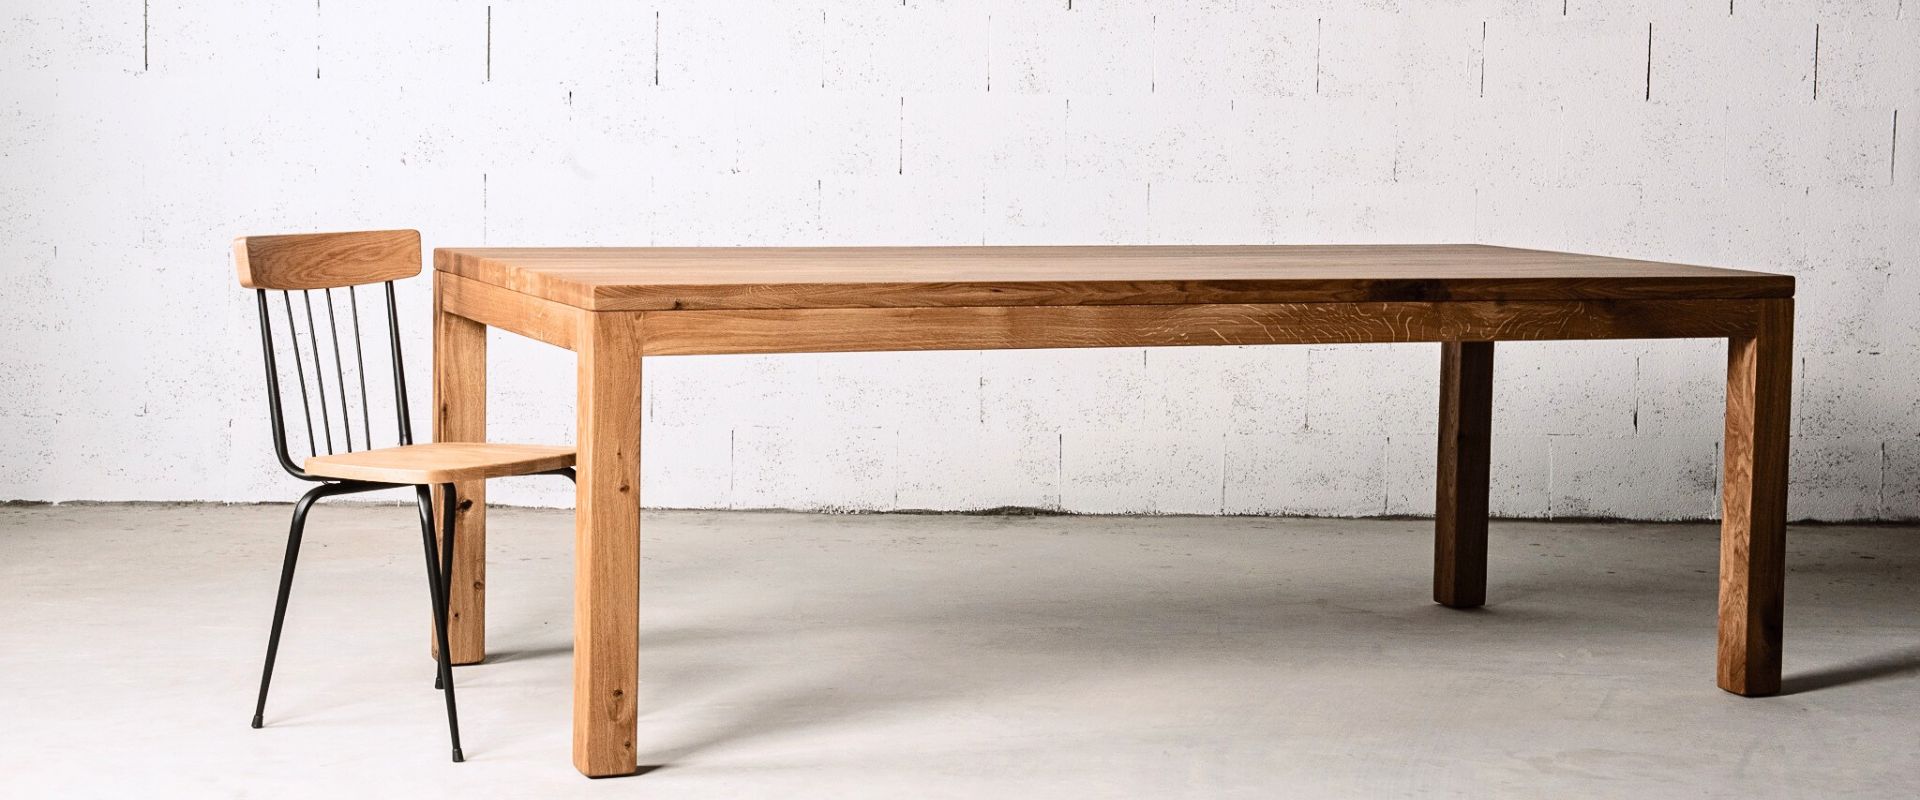 שולחן פינת אוכל C4 מאלון מלא בעיצוב סקנדינבי